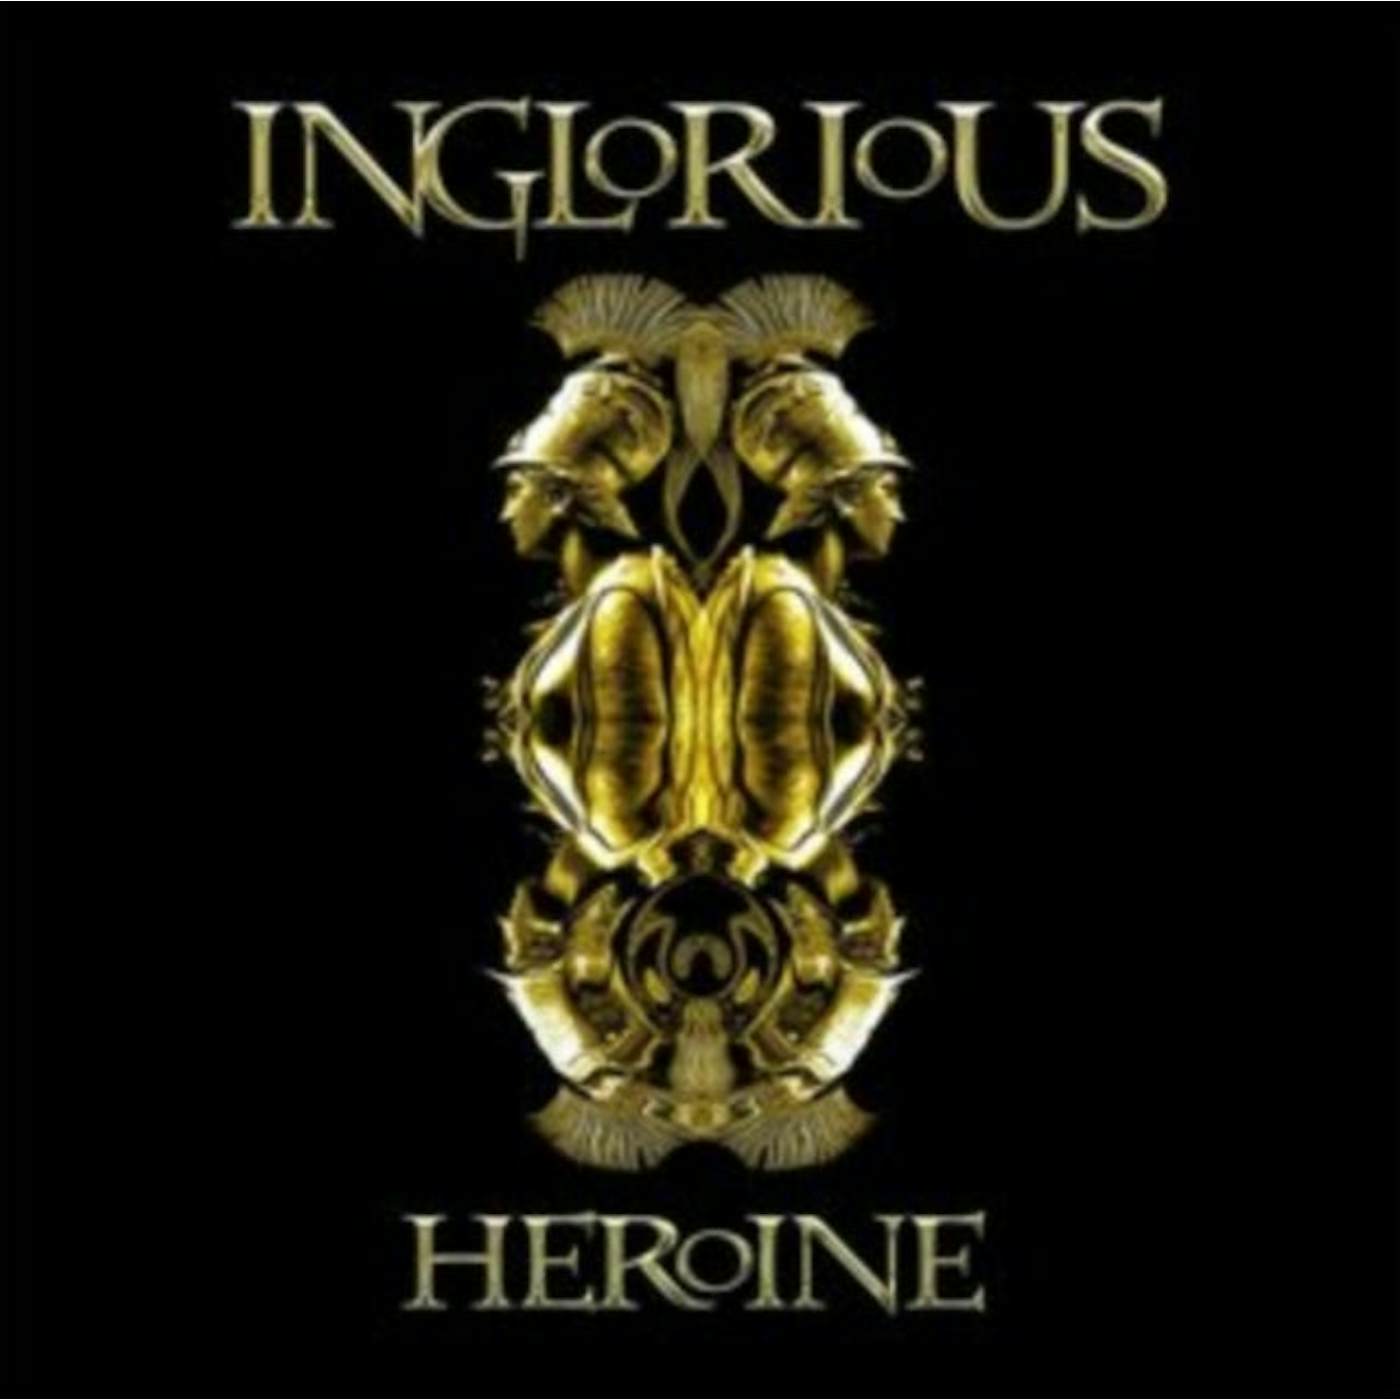 Inglorious CD - Heroine